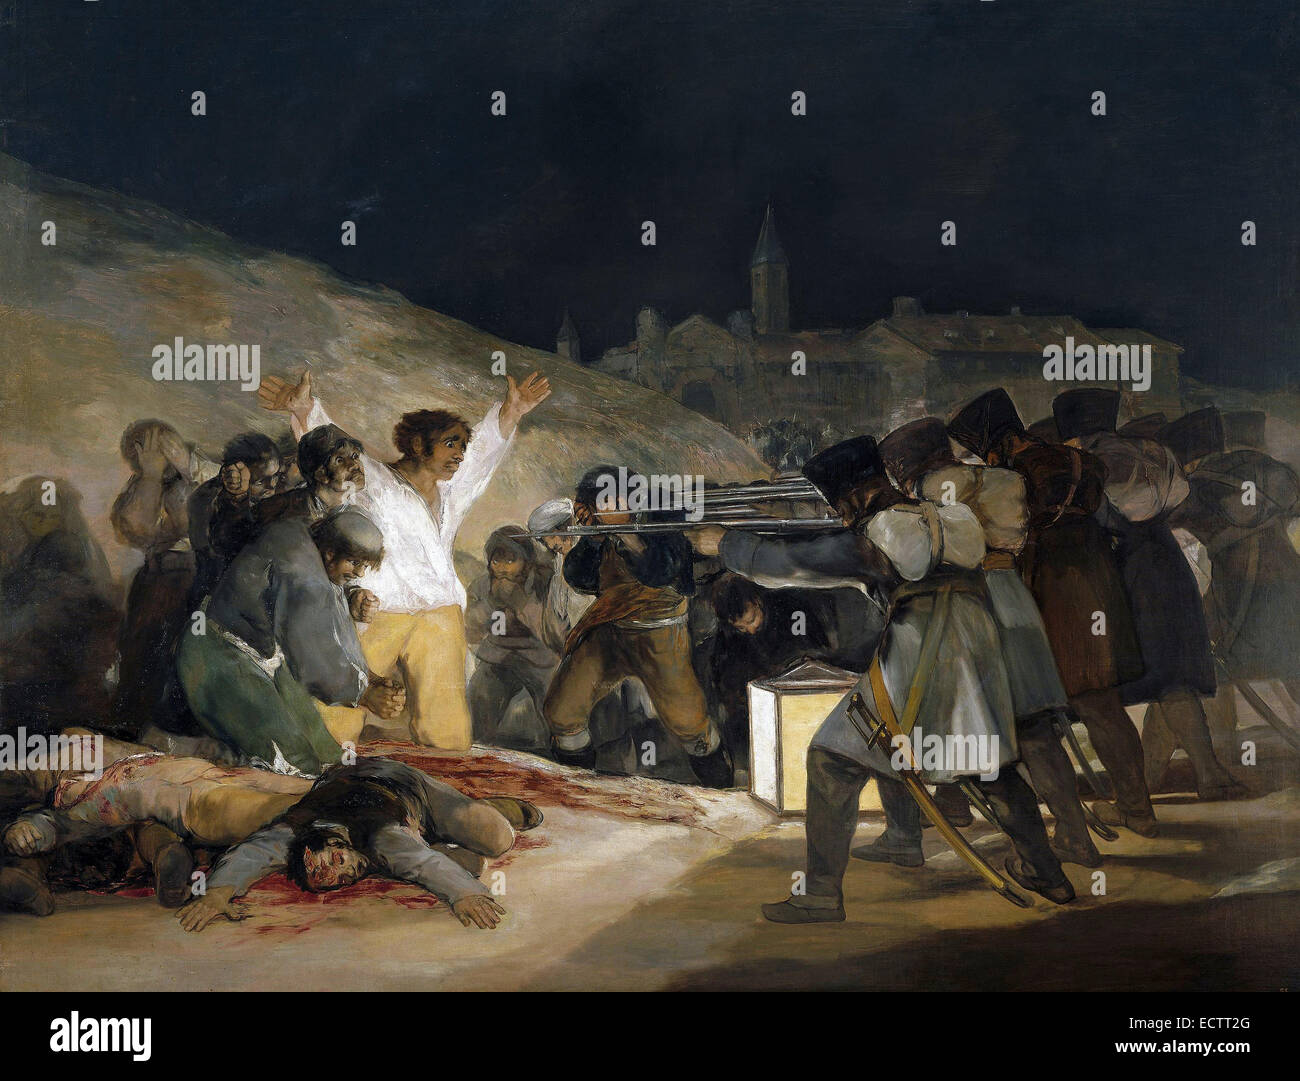 Der dritte Mai 1808 von Francisco Goya, spanischer Widerstandskämpfer hingerichtet durch Napoleonische Truppen zeigen. Stockfoto